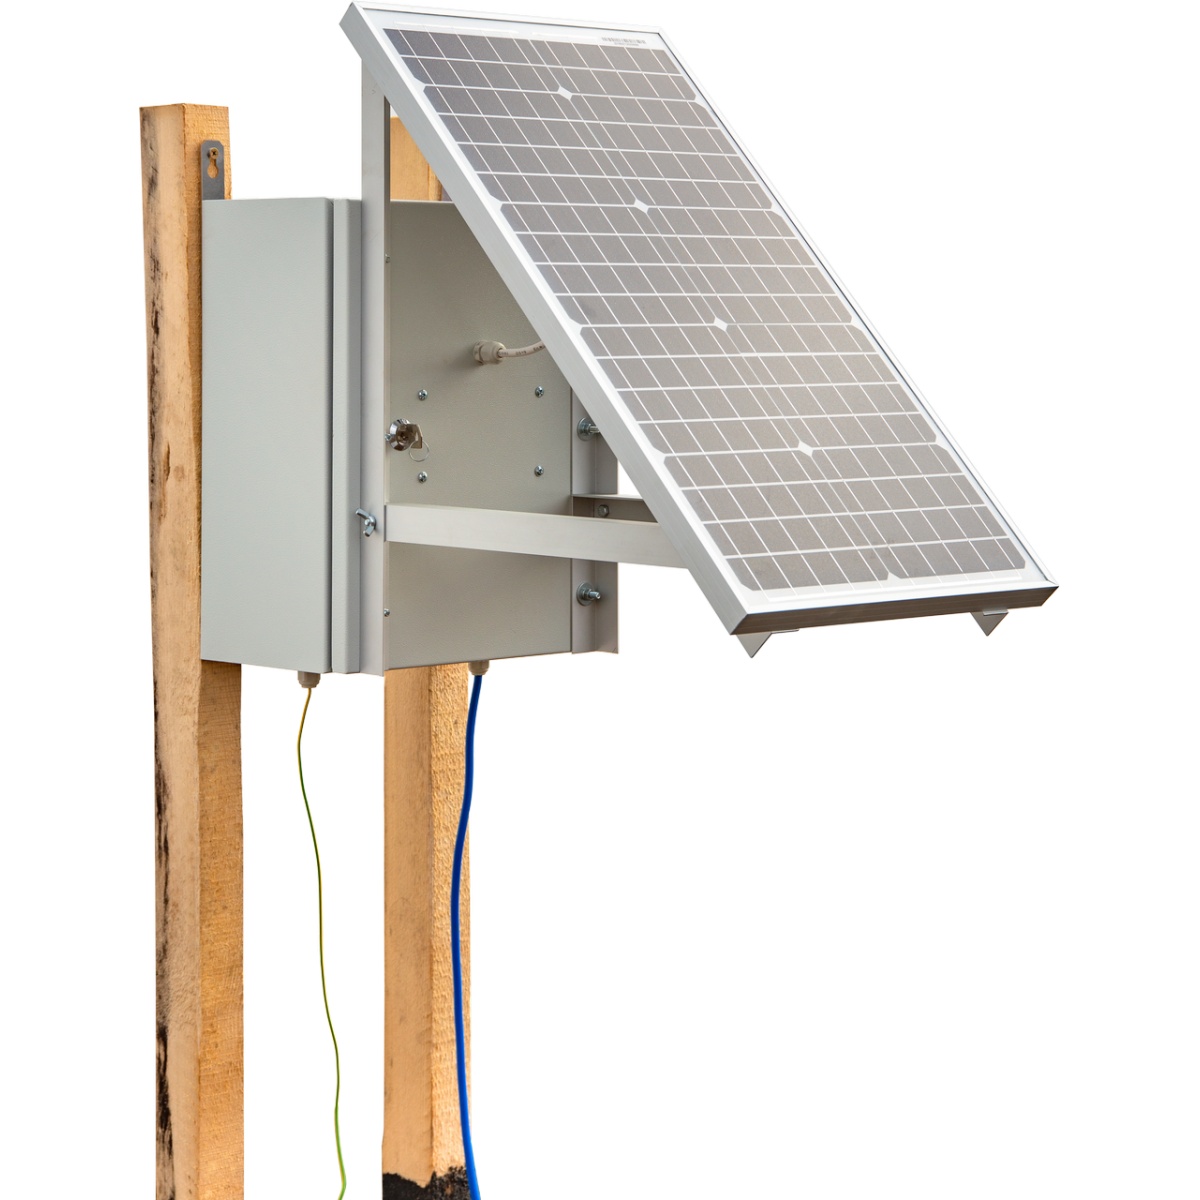 Kompakt DL 3200 villanypásztor készülék napelemes rendszerrel és 12 V-os akkumulátorral